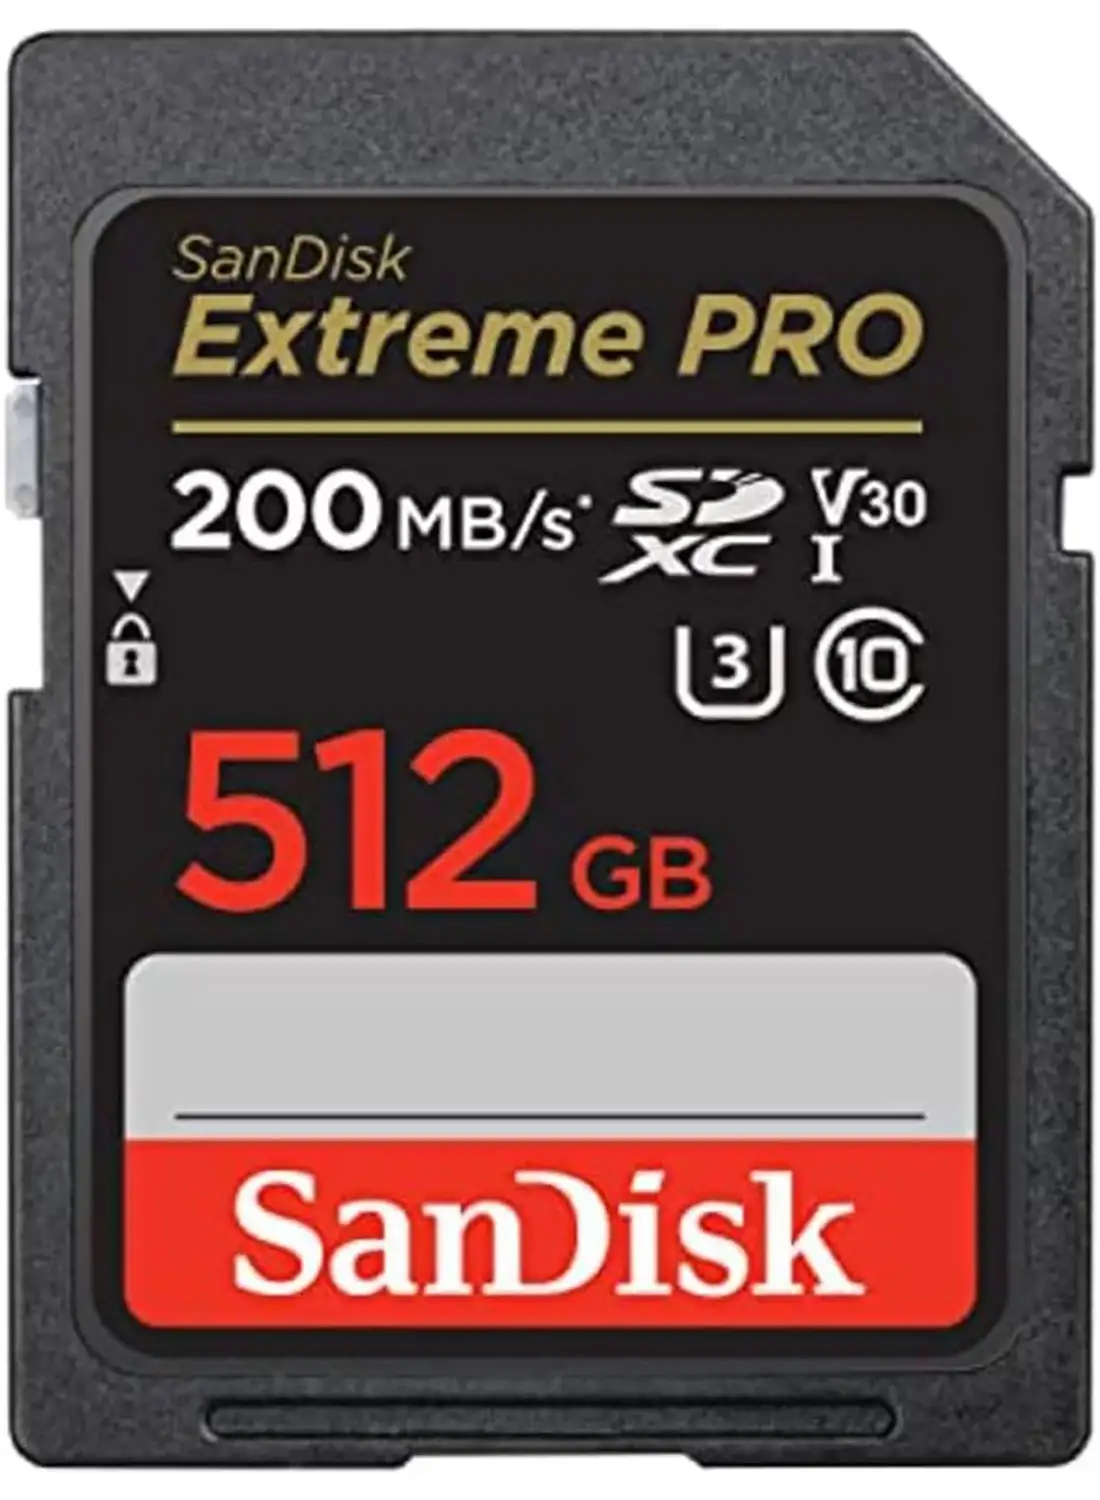 Sandisk 512GB Extreme PRO SDXC card + RescuePRO Deluxe, up to 200MB/s, UHS I, Class 10, U3, V30 SDSDXXD 512G GN4IN 512 GB